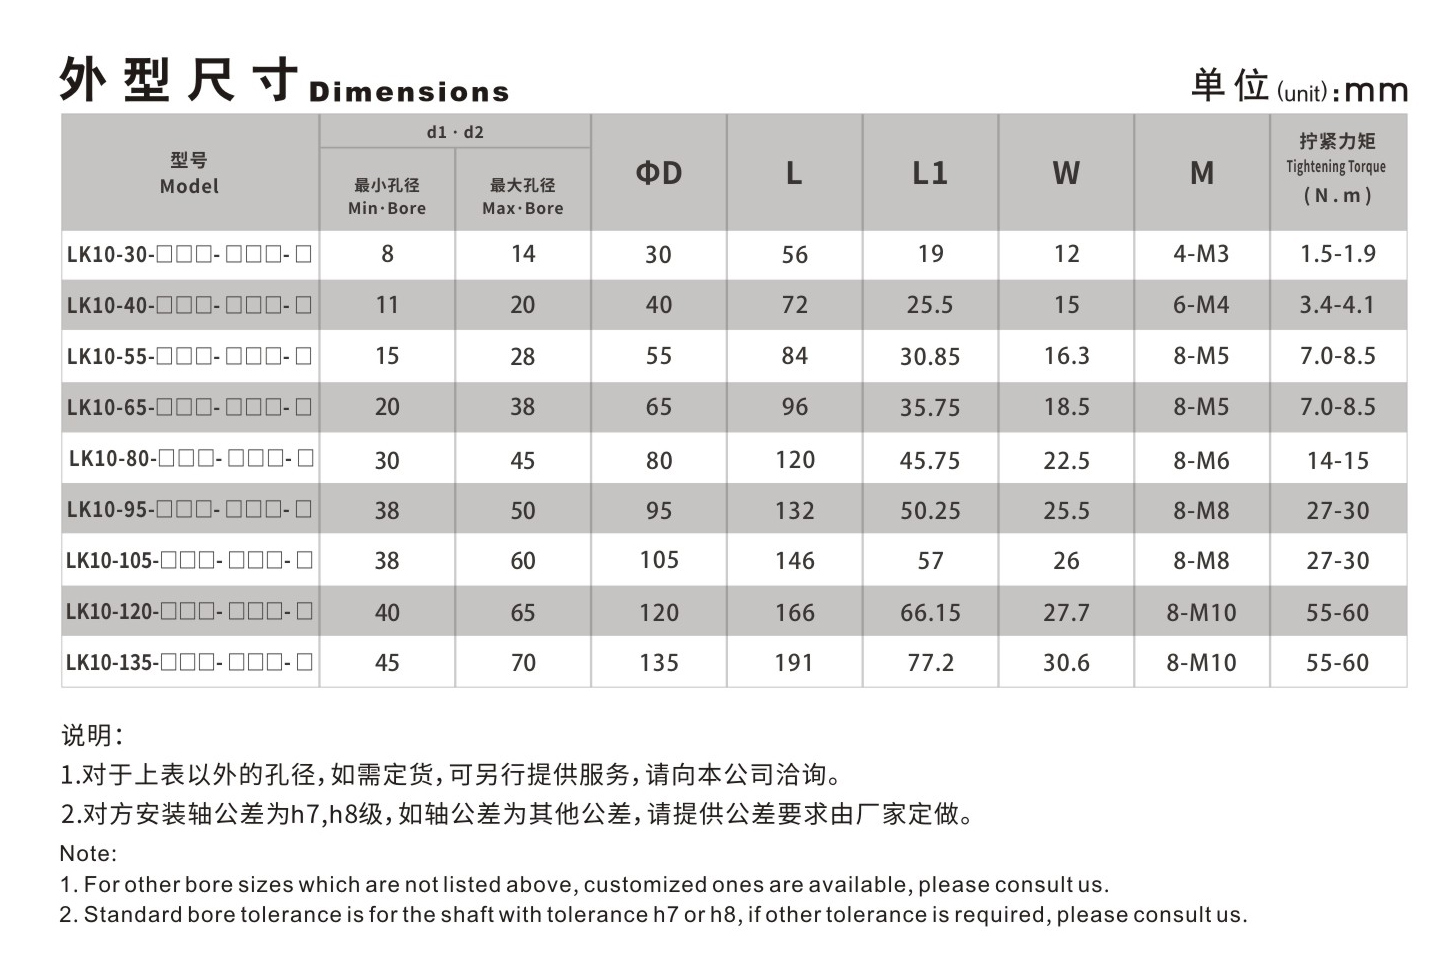 LK10系列 梅花弹性体胀套联轴器_联轴器种类-广州菱科自动化设备有限公司